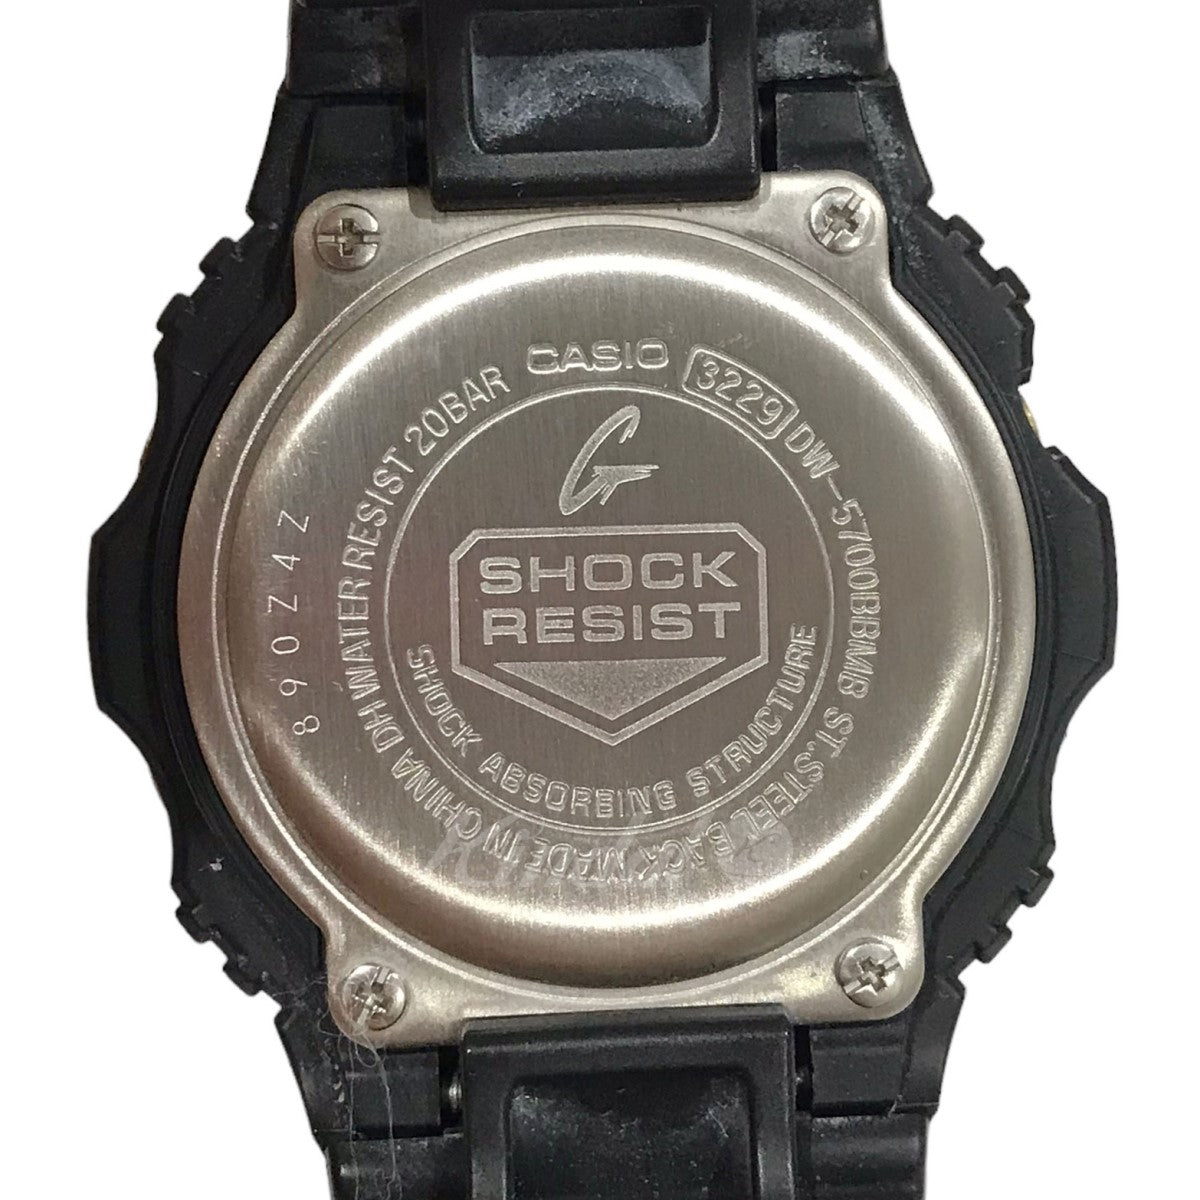 CASIO G-SHOCK 腕時計 DW-5700BBMB DW-5700BBMB ブラック サイズ 12｜【公式】カインドオルオンライン  ブランド古着・中古通販【kindal】